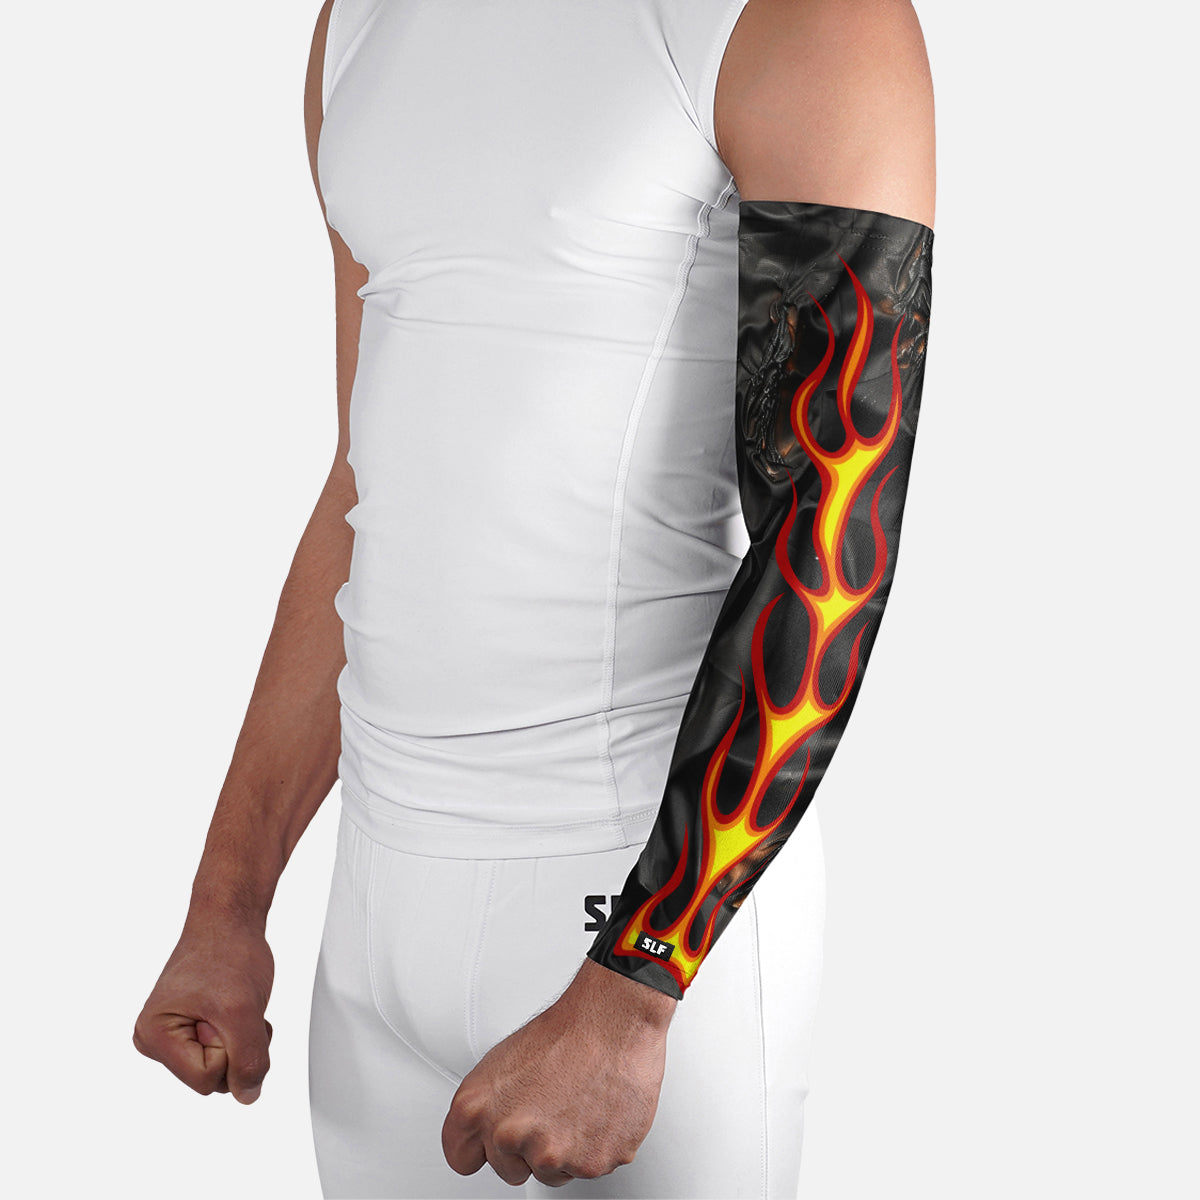 Hot Rod Flames Arm Sleeve